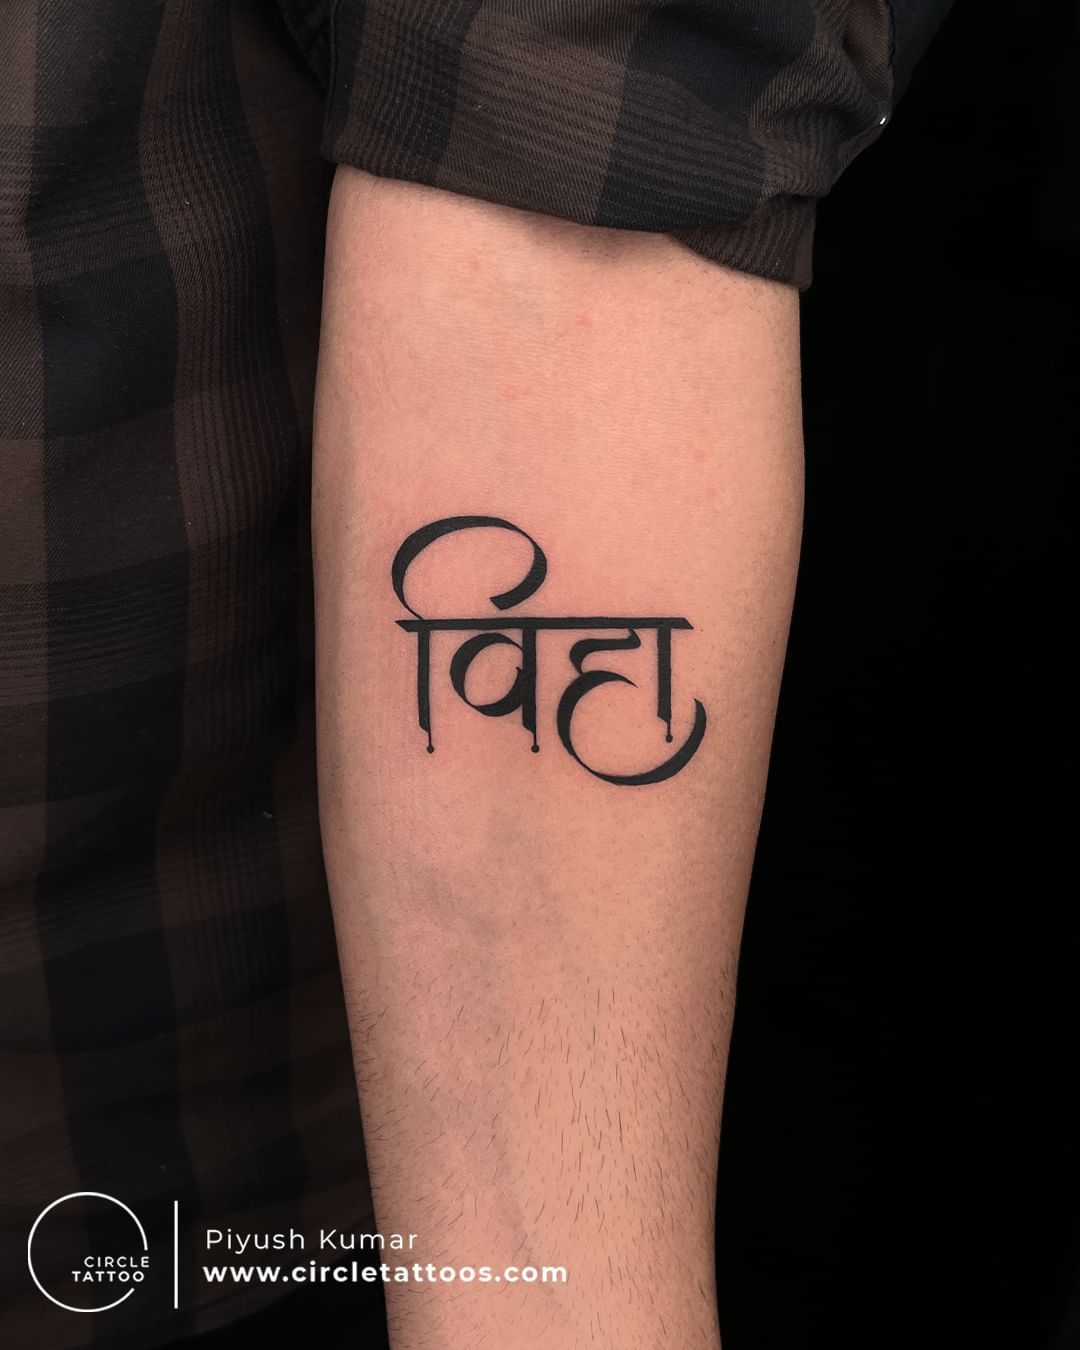 Jay hind tattoo,26 January 2019,Republic day 2019,india tattoo,tattoo 2019, tattoo design,hindi tatto - YouTube